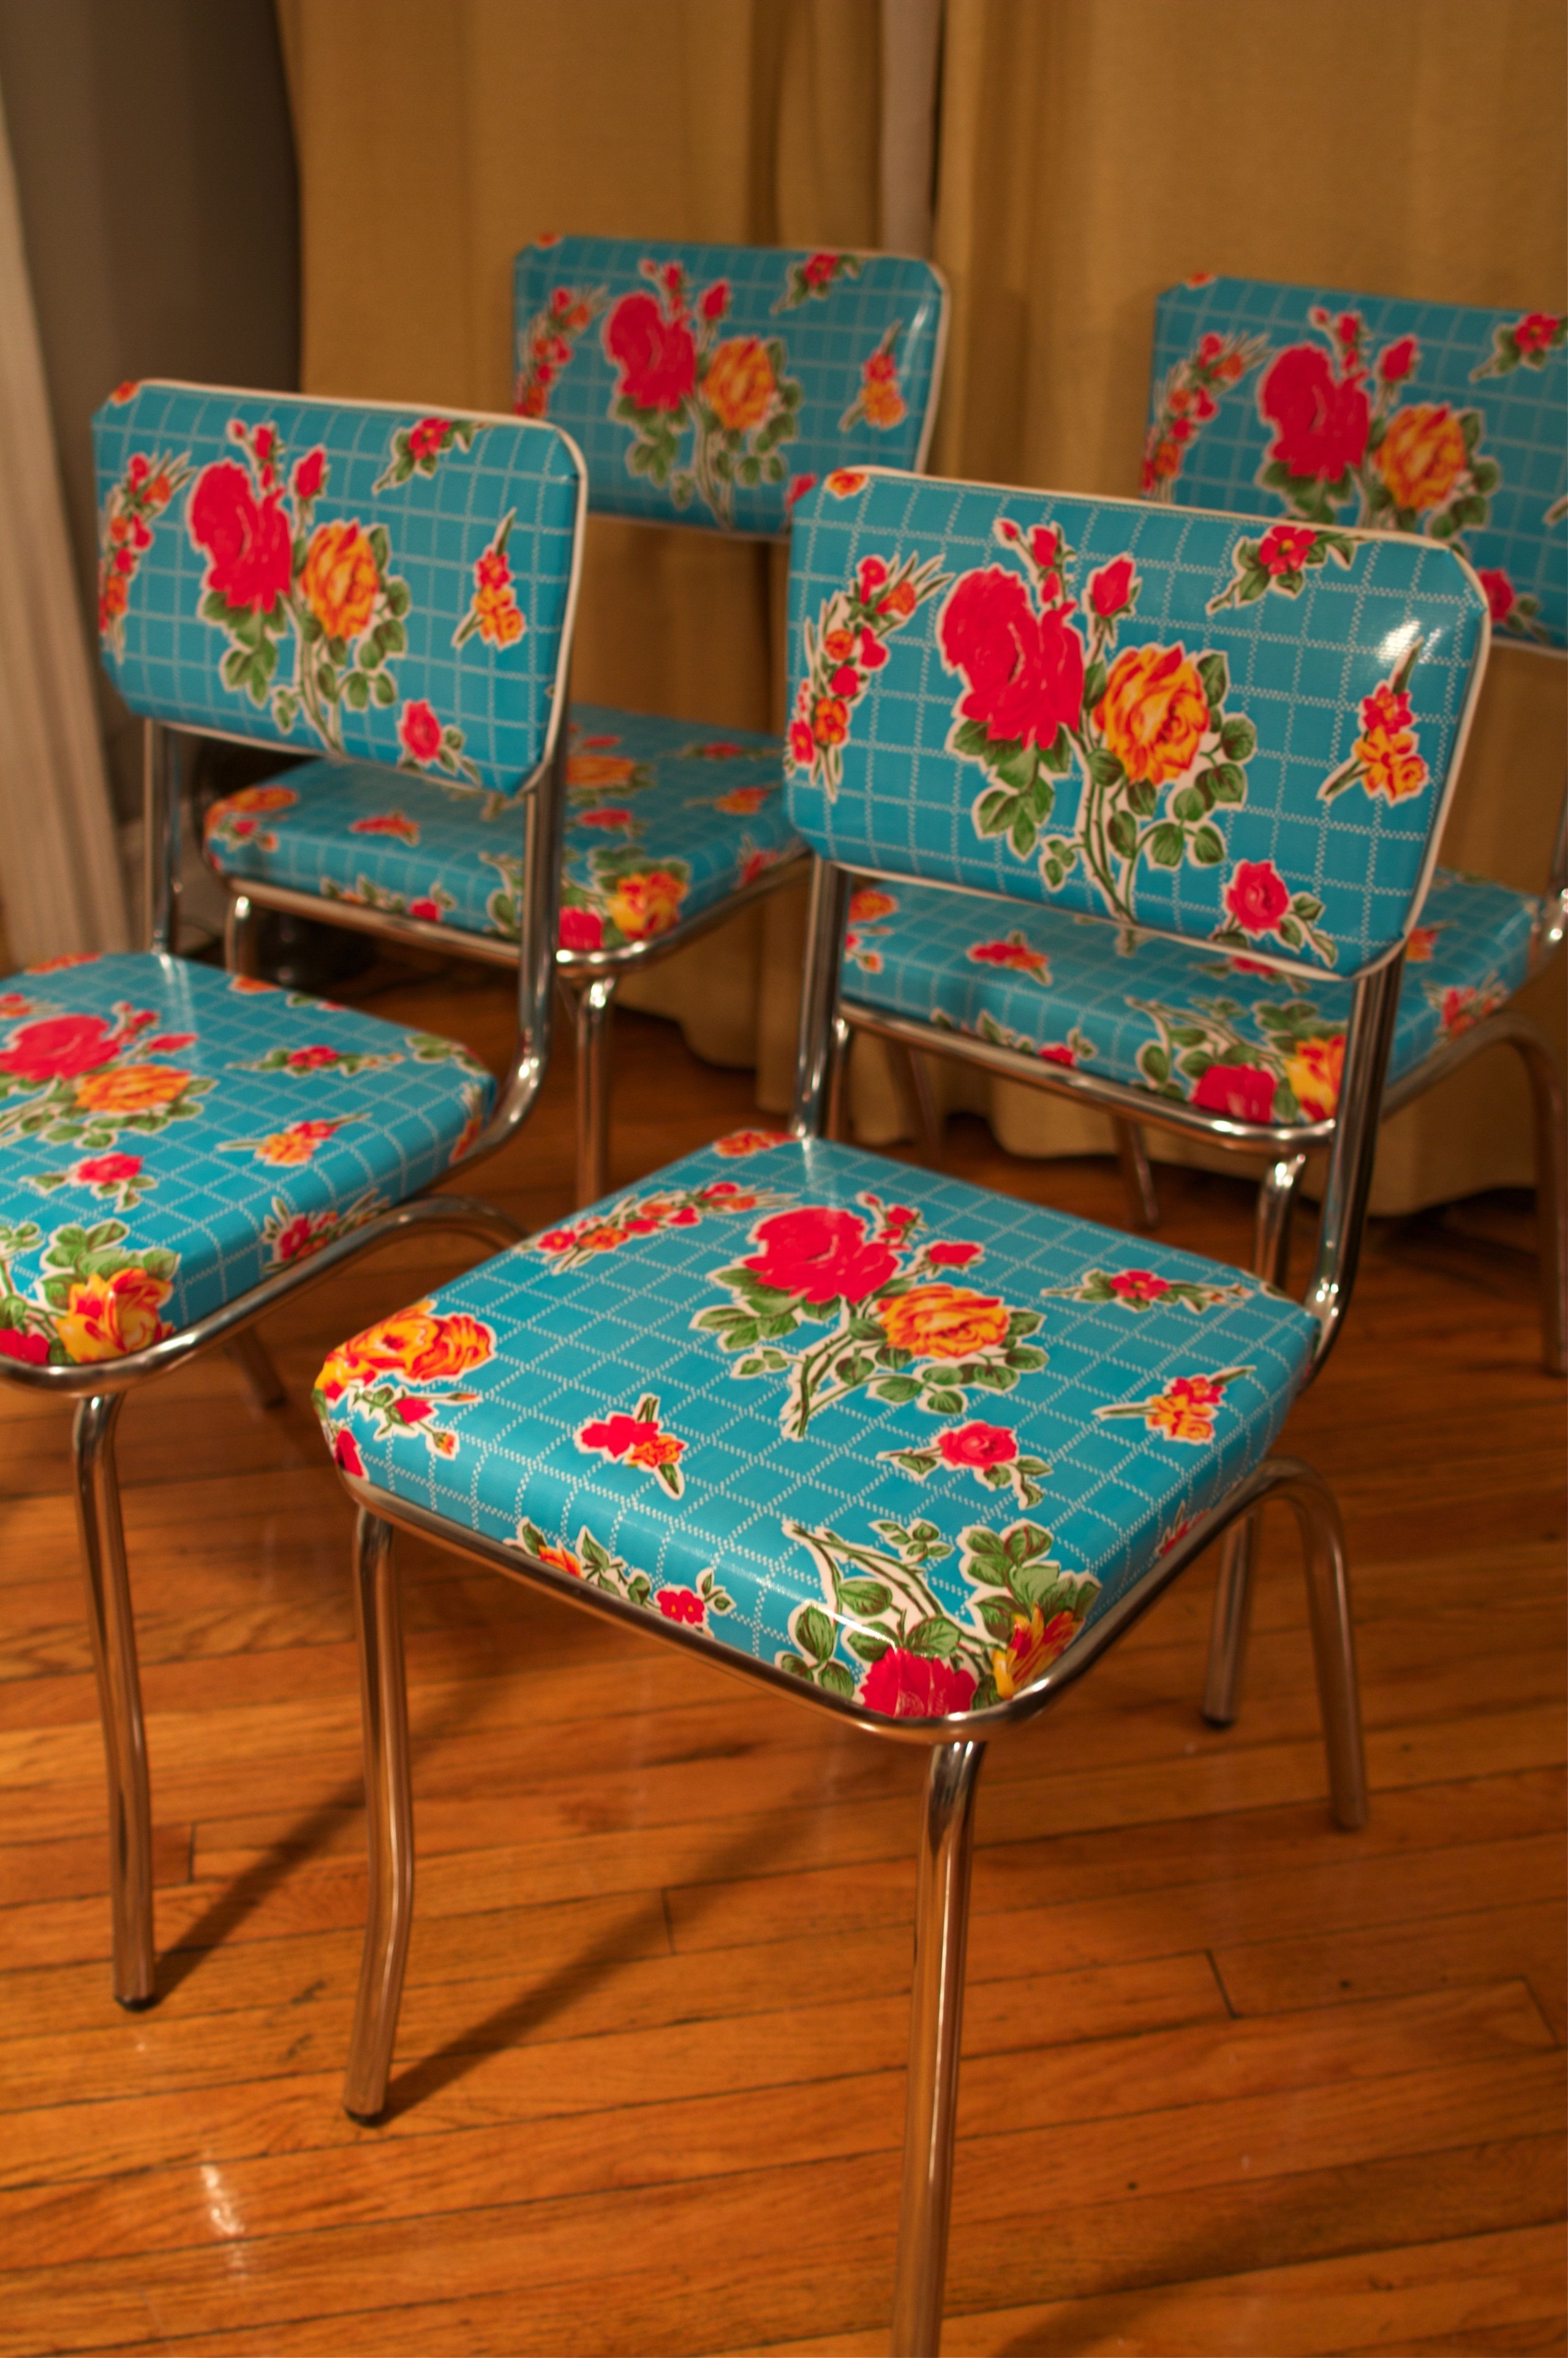 Chrome kitchen chairs